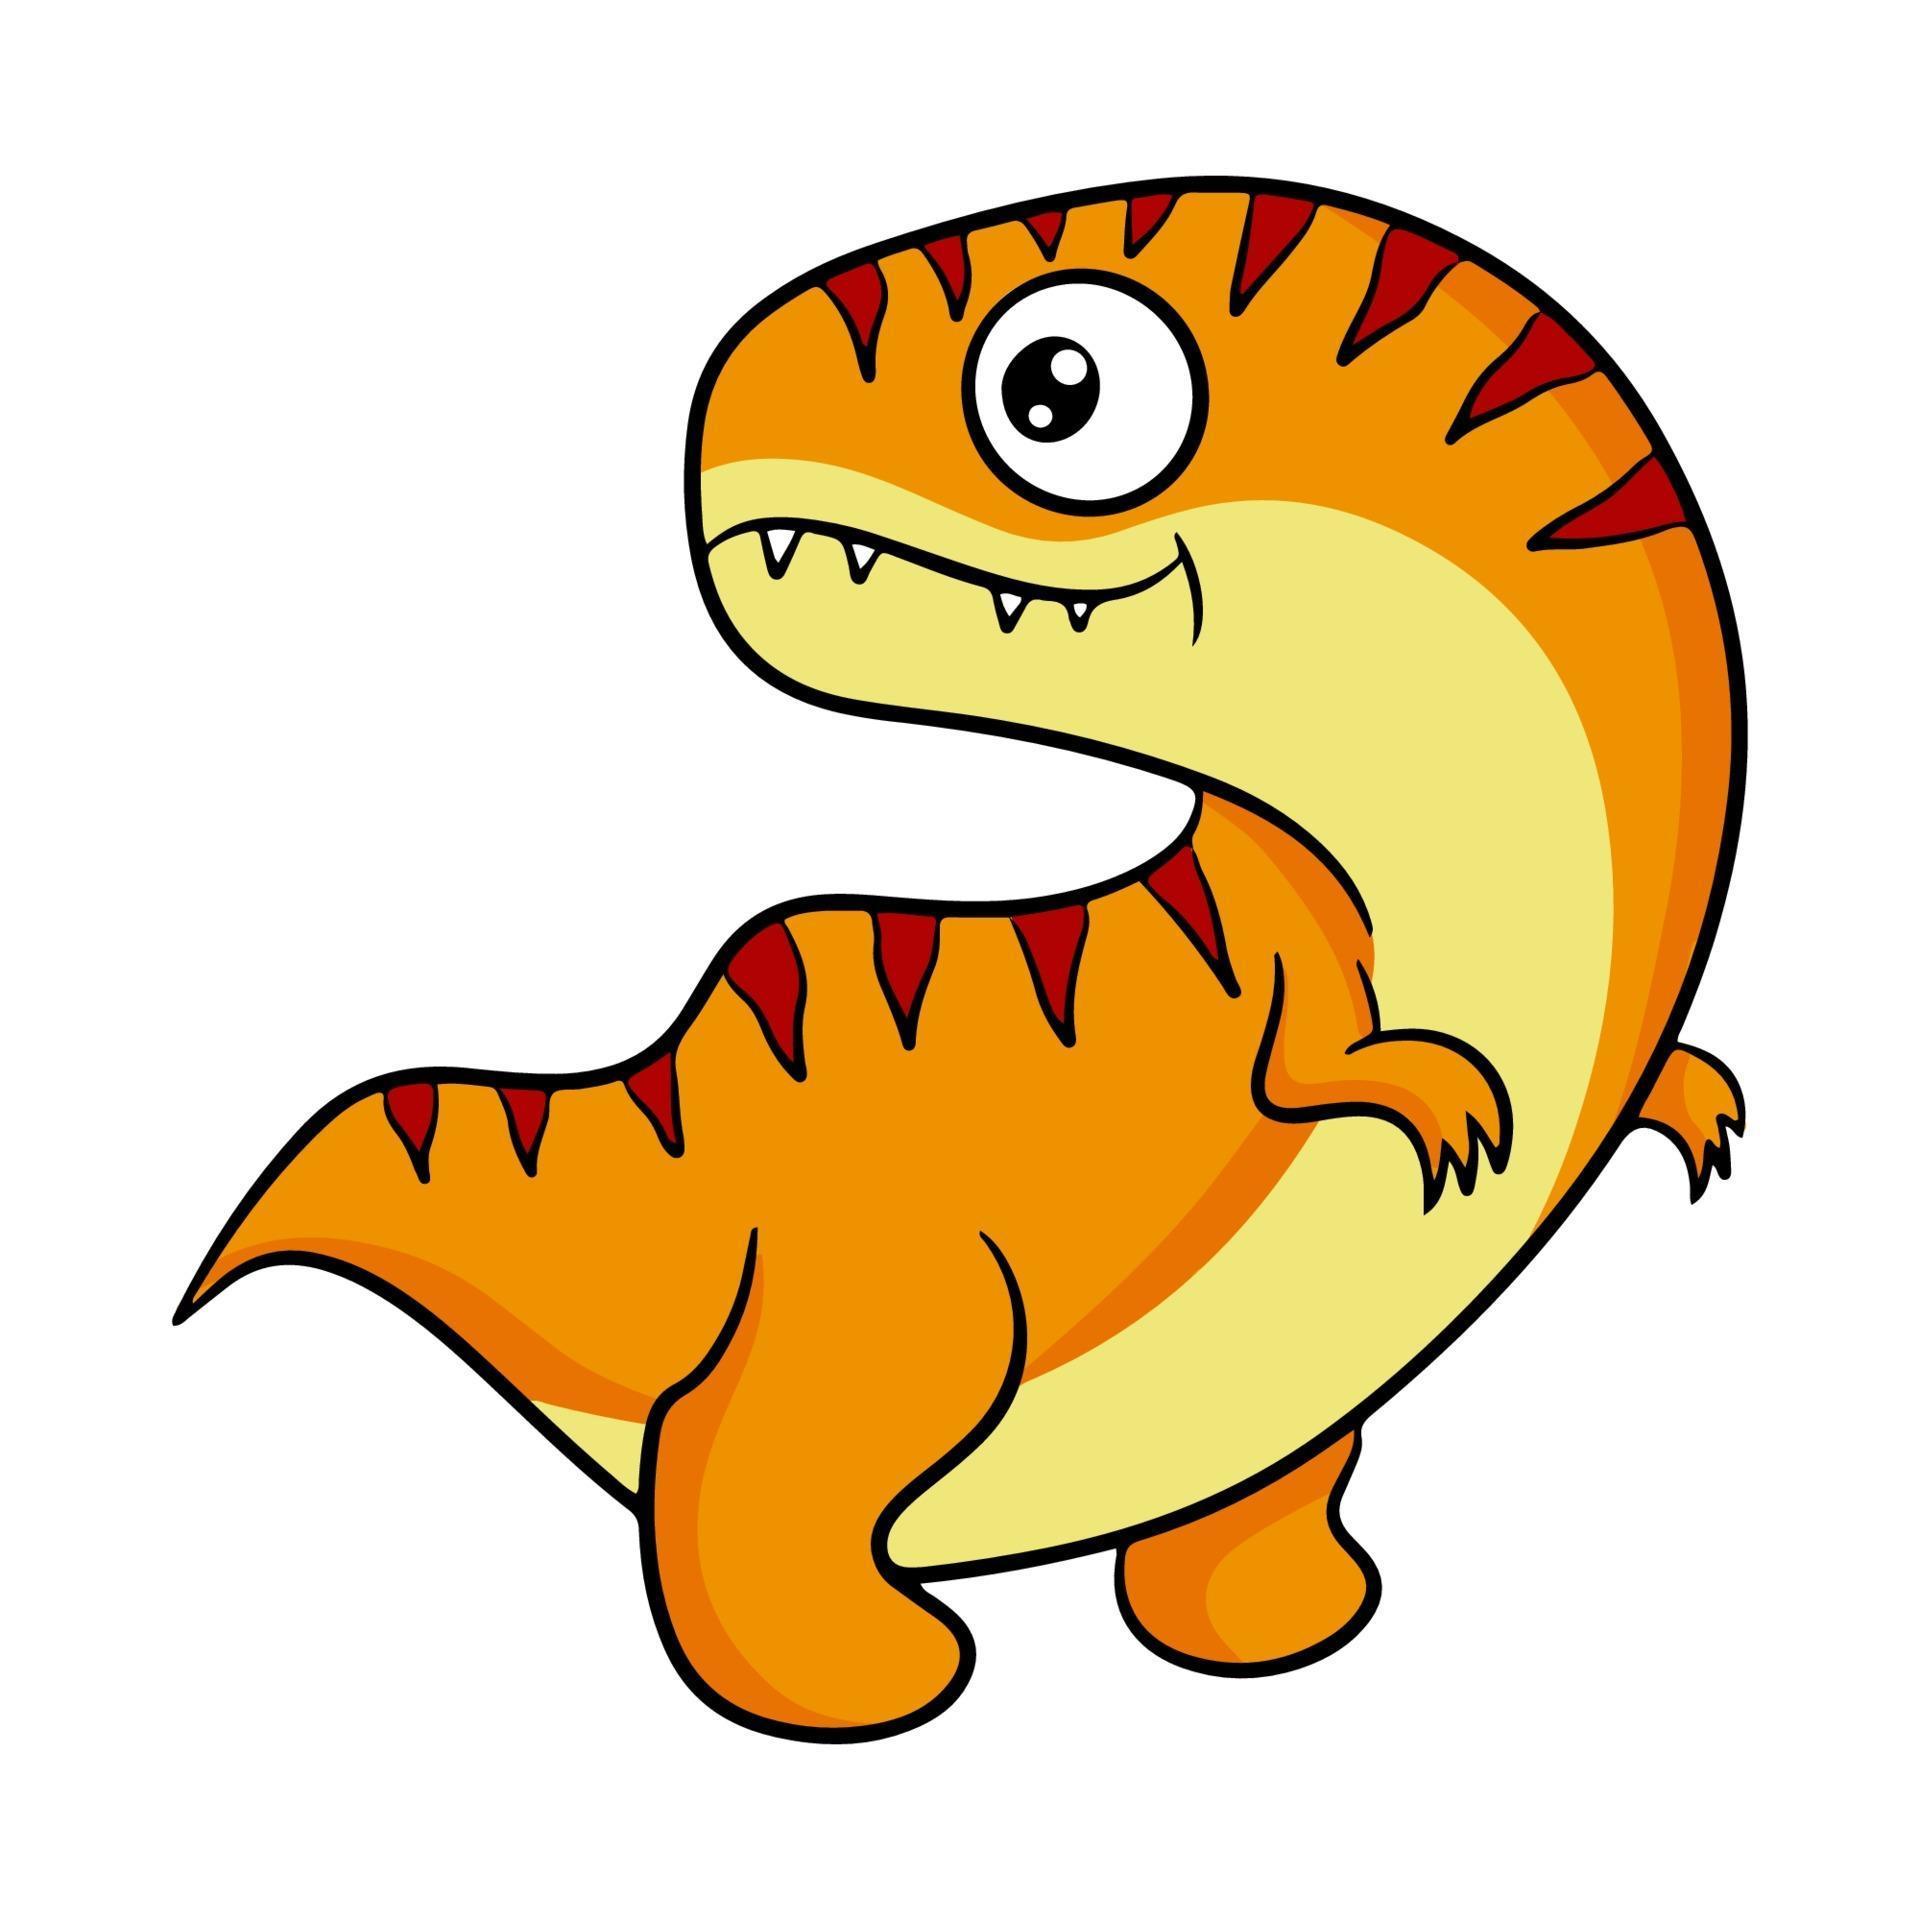 Cute orange dinosaur in cartoon style. Vector illustration isolated on